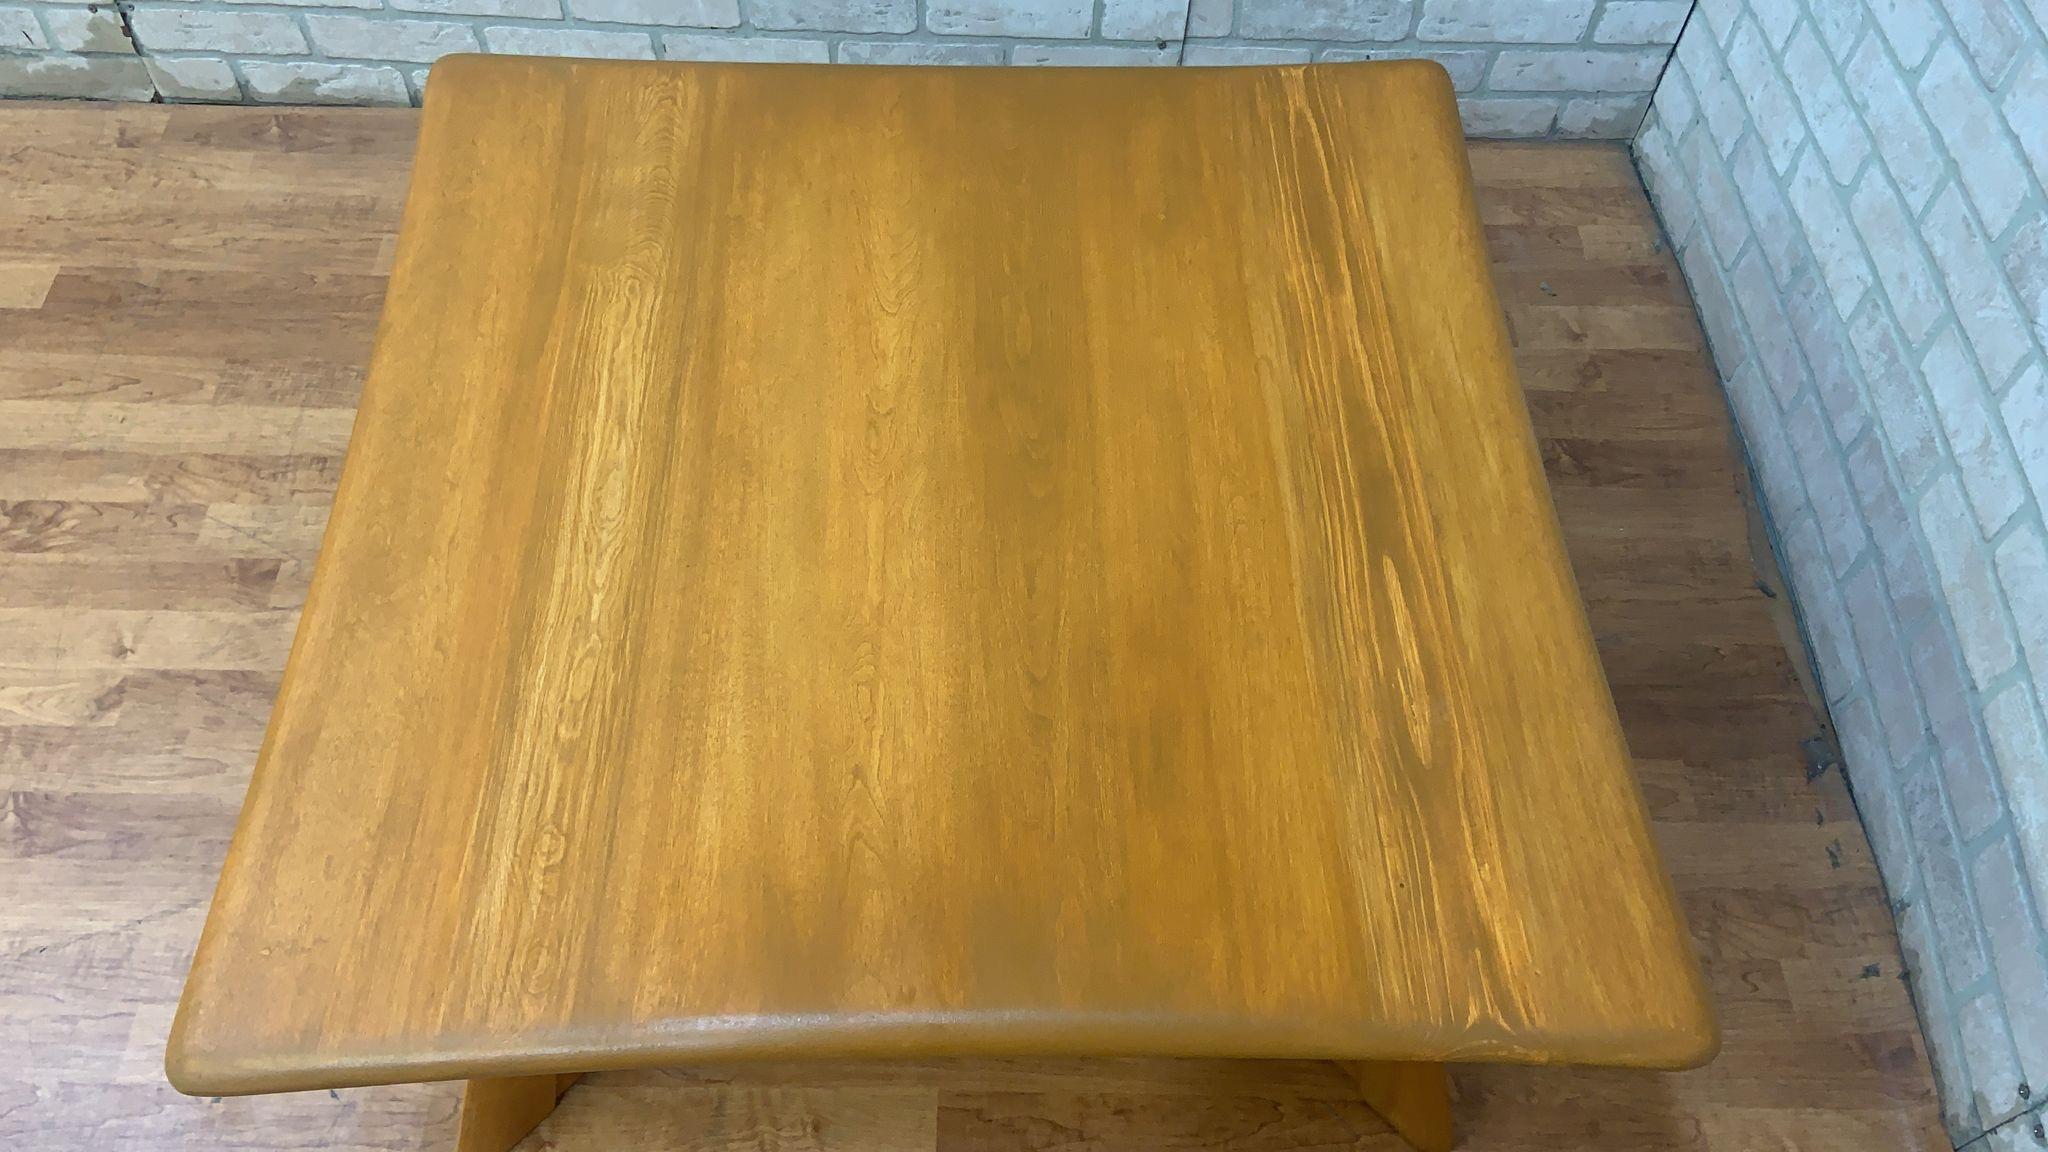 Quadratischer Heywood Wakefield-Couchtisch mit X-Fuß, Mid-Century Modern

Der Heywood-Wakefield X Base Square Coffee Table ist ein klassisches Möbelstück, das die Ästhetik des Mid-Century Modern Designs verkörpert. Er verfügt über eine quadratische